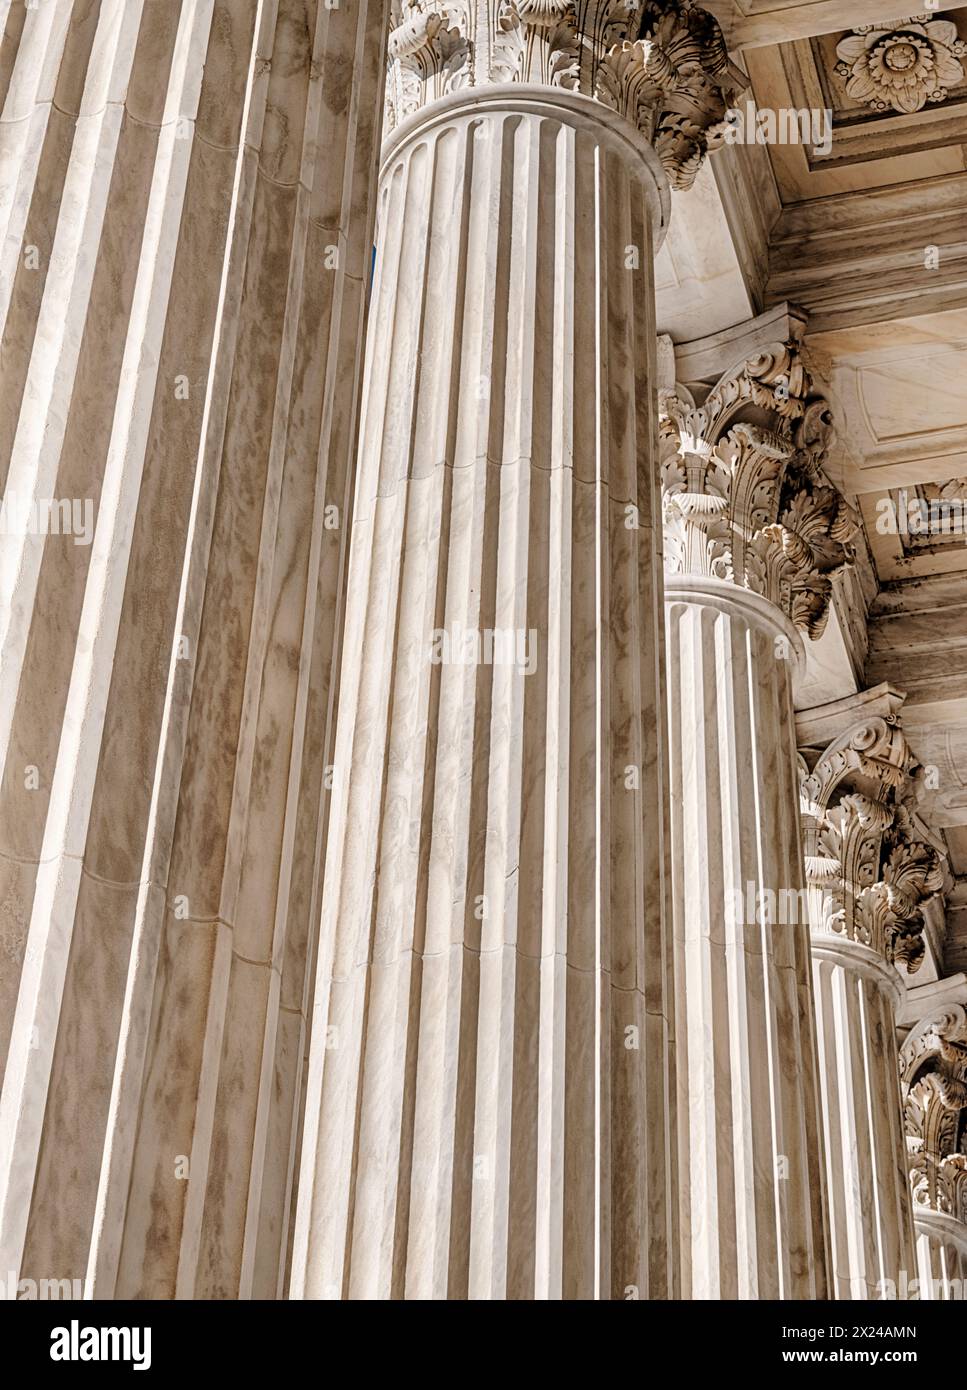 Les hautes colonnes de marbre devant la Cour suprême des États-Unis sont éclairées par la lumière du soleil et projettent un sentiment de justice. Banque D'Images